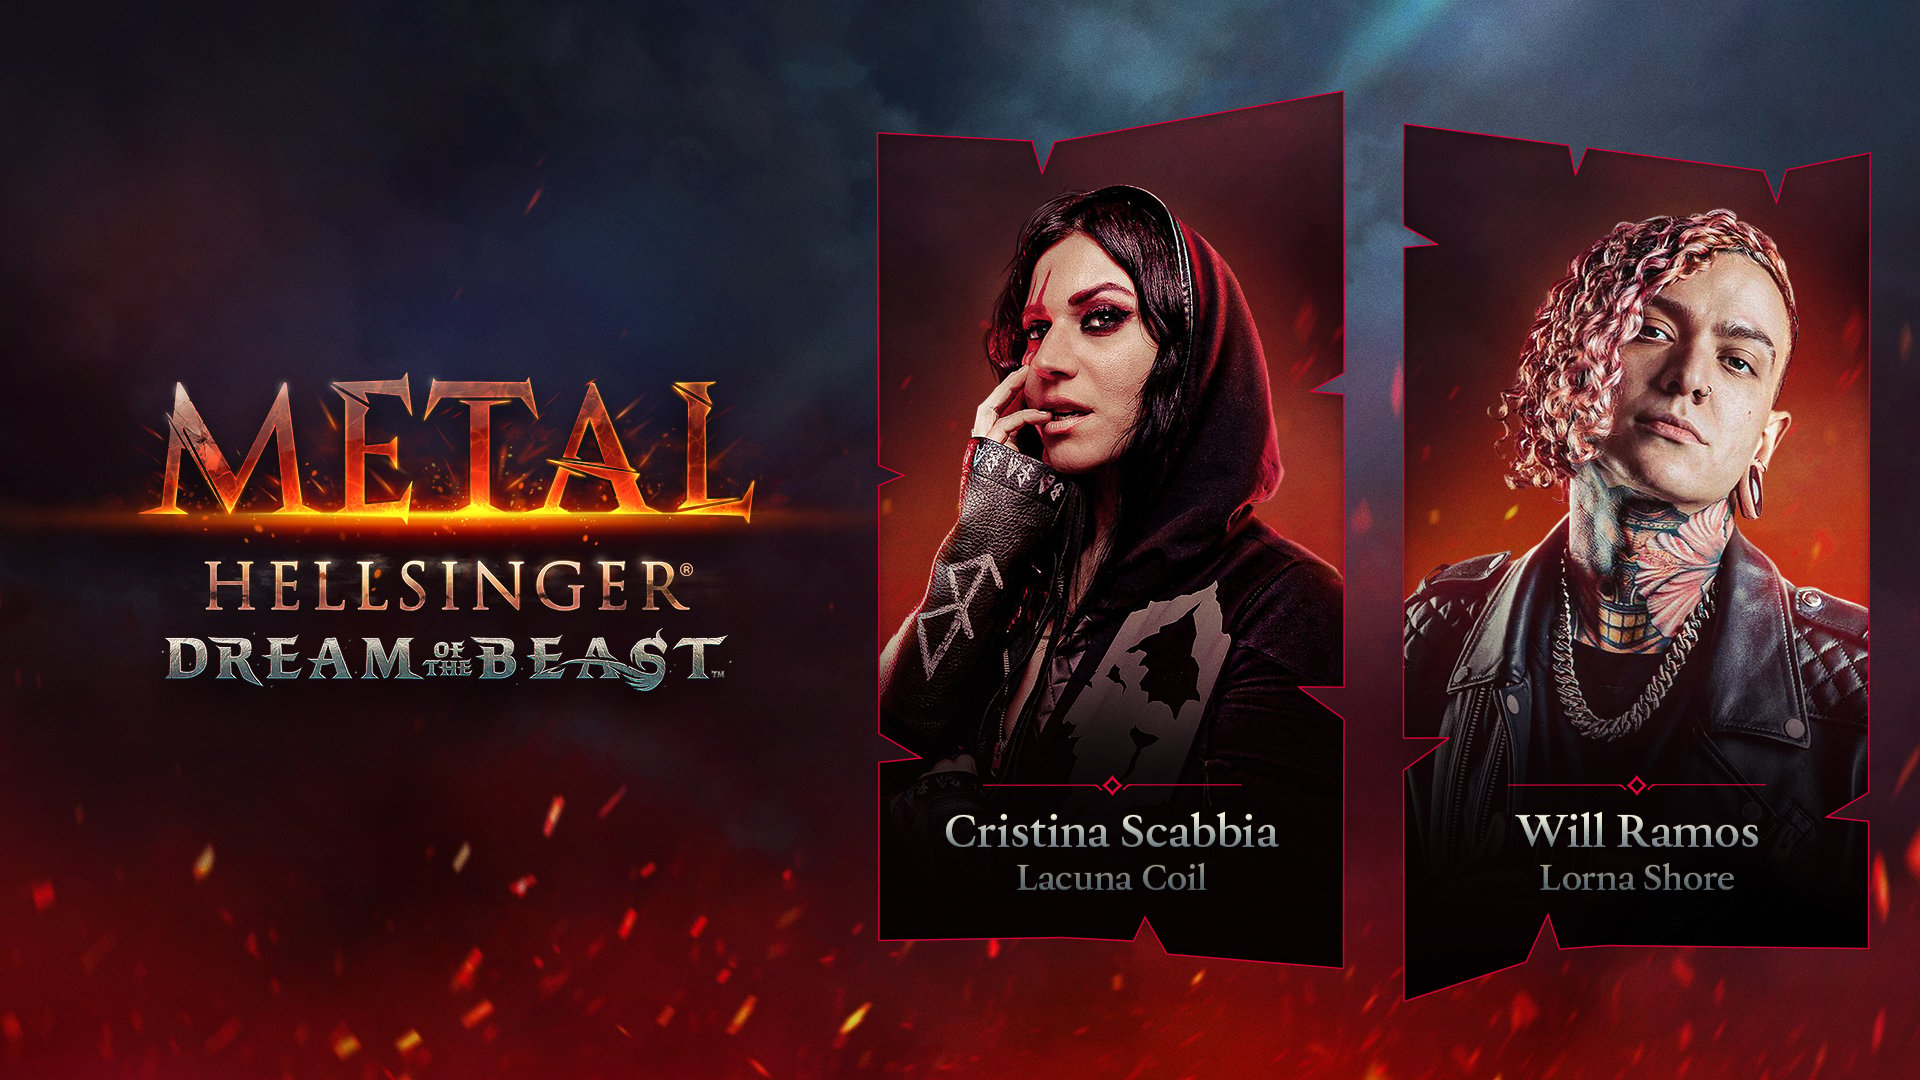 Metal: Hellsinger primește un DLC intitulat “Dream of the Beast” care va fi lansat pe 29 martie